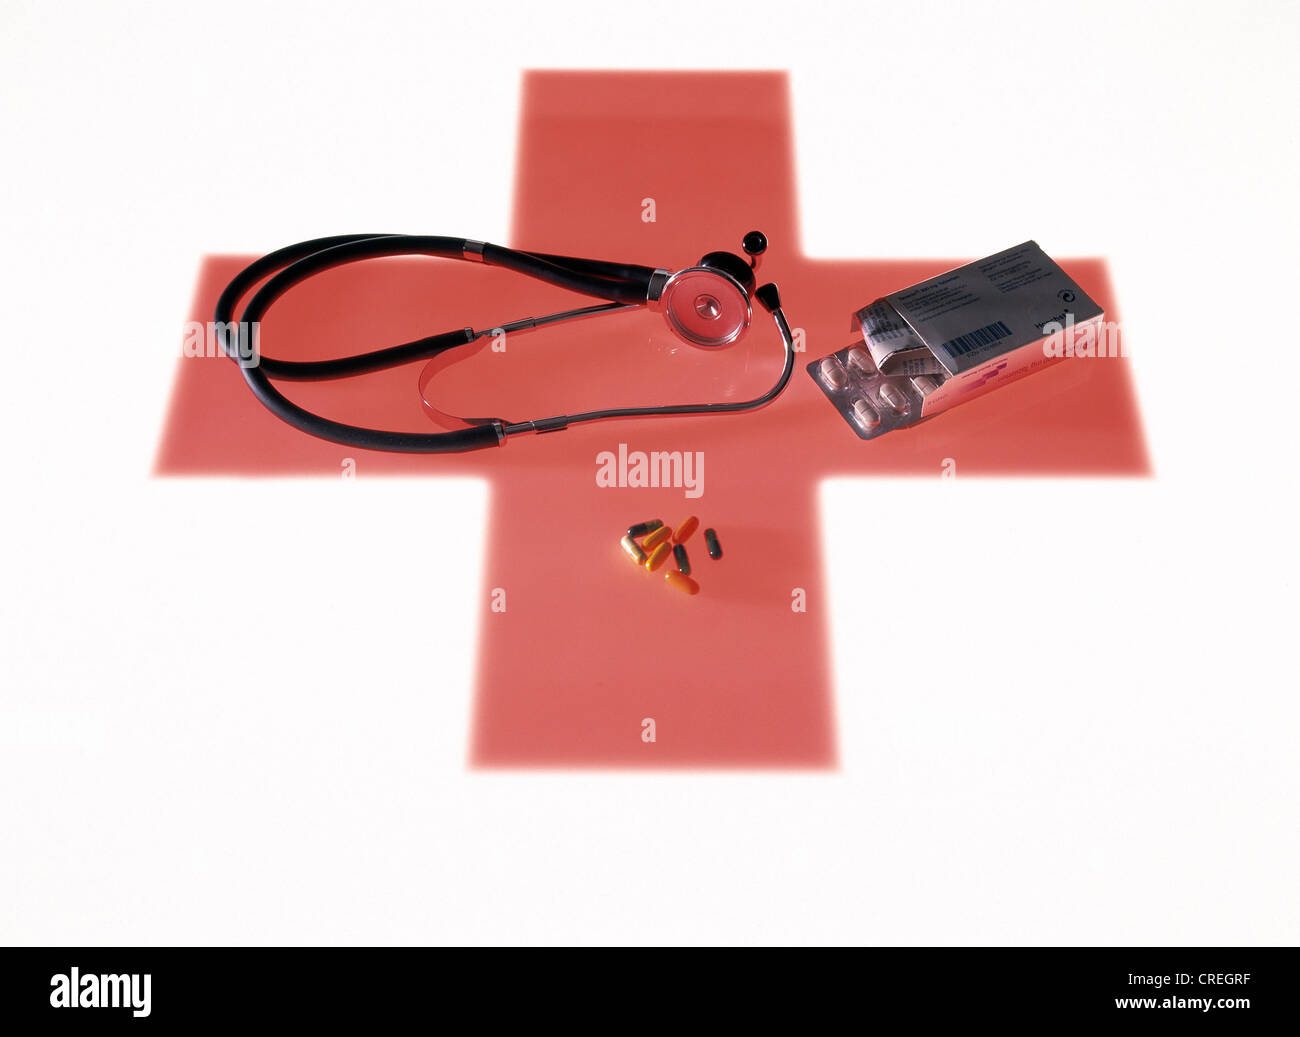 Verschiedene medizinische Utensilien auf ein rotes Kreuz als Symbol darunter liegend Stockfoto